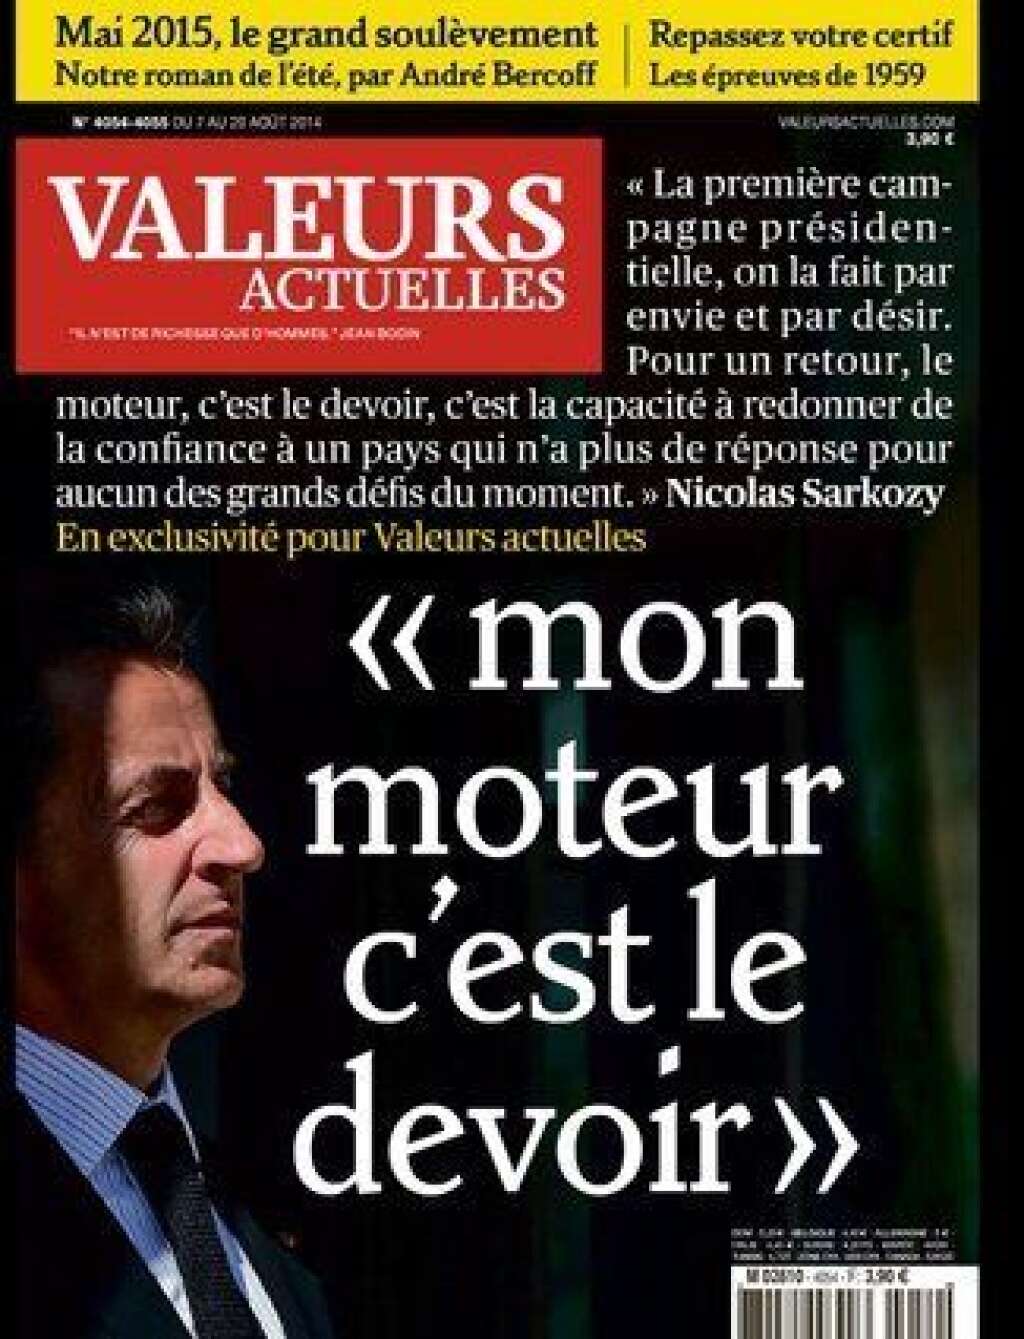 7 août 2014: "Une grande partie du chemin est faite" - En plein milieu des vacances, Nicolas Sarkozy fait venir un journaliste de Valeurs Actuelles au Cap Nègre pour lui faire part de l'état de sa réflexion. La notion de devoir réapparaît dans cet entretien mais c'est une autre phrase qui fait mouche: "Que l'on parle de mon retour dans la vie politique, c'est déjà miraculeux en soi. Cela veut dire que cette idée du retour est inscrite dans les têtes et dans les esprits. À partir de ce moment-là, une très grande partie du chemin est faite", dit-il.